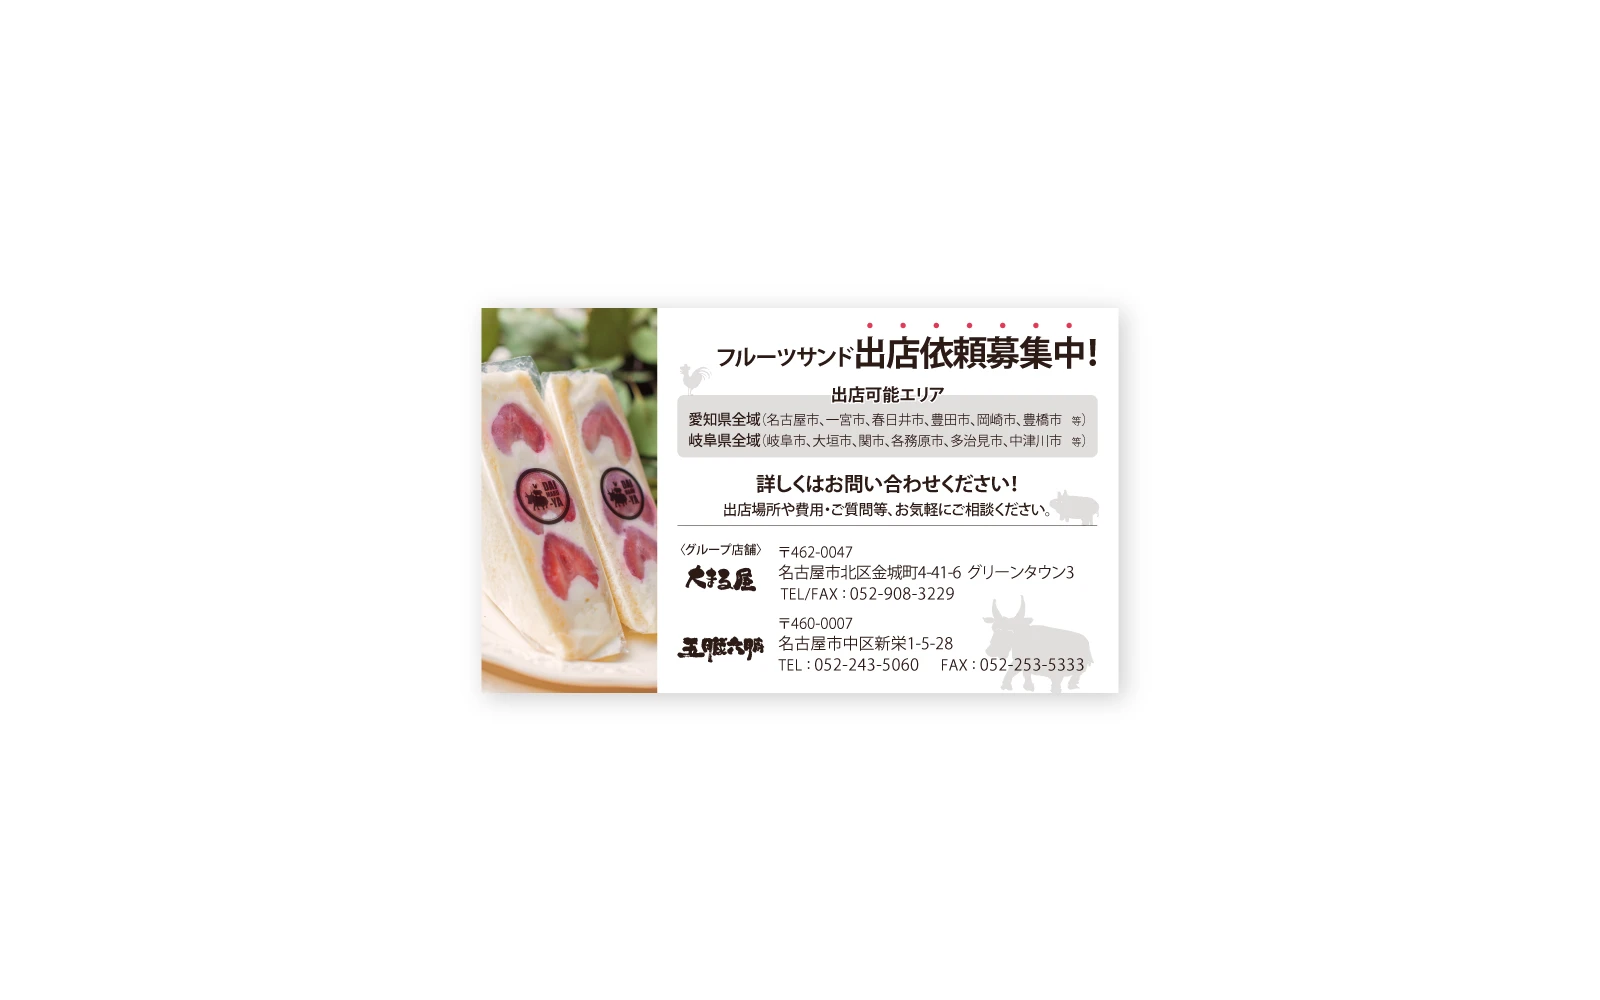 フルーツサンド移動販売専門店DAIMARU-YA / 名刺デザイン